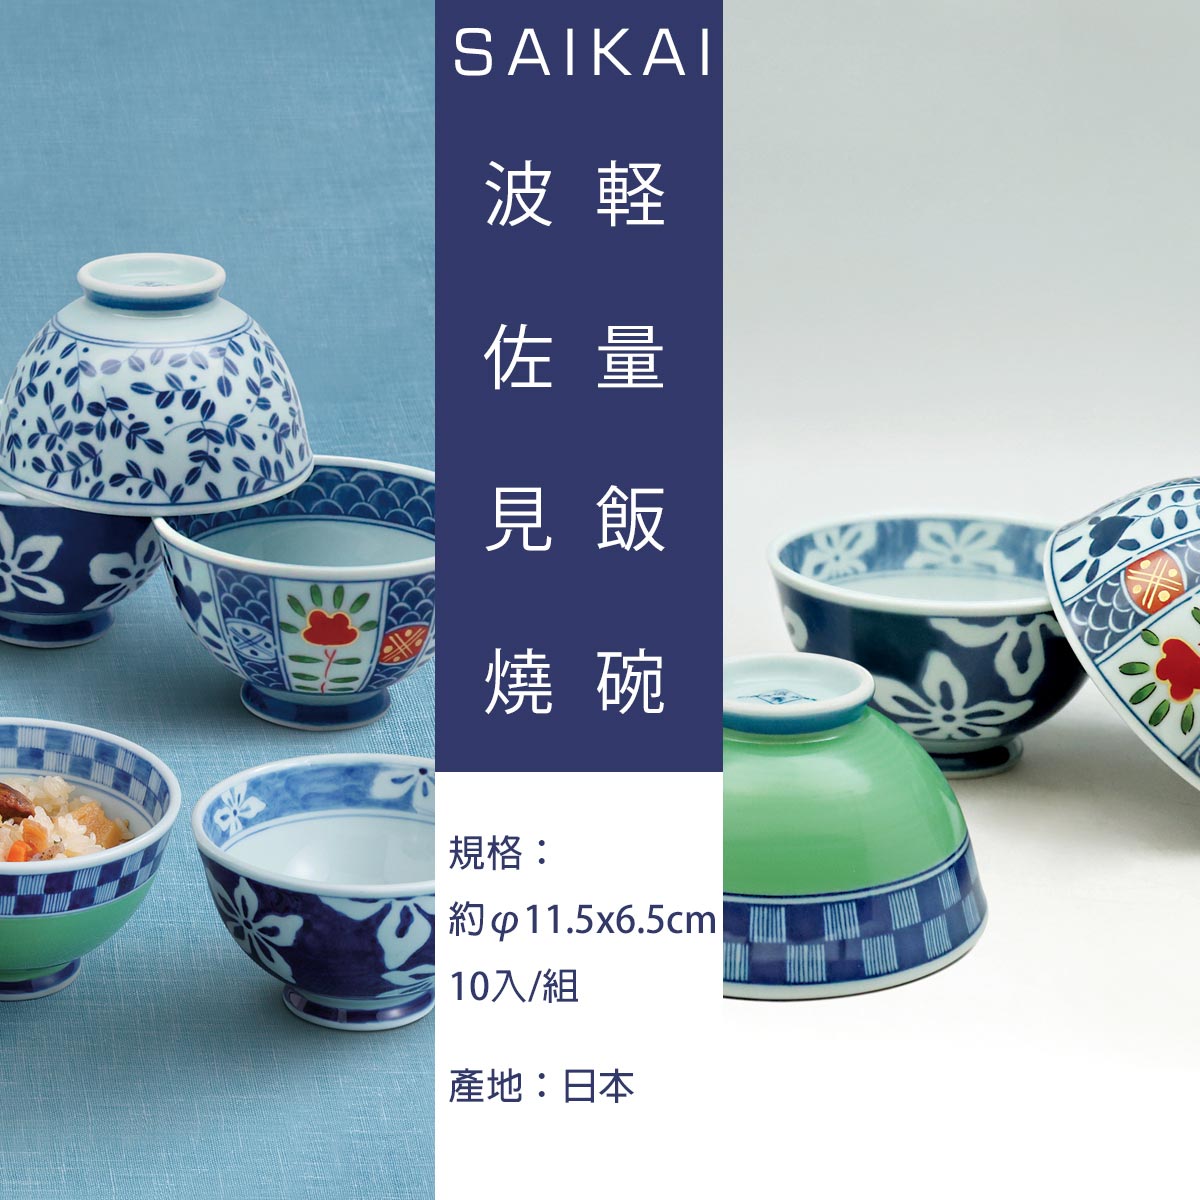 日本製輕量飯碗,產品規格 約11.5*6.5公分,10入/組,產地日本.